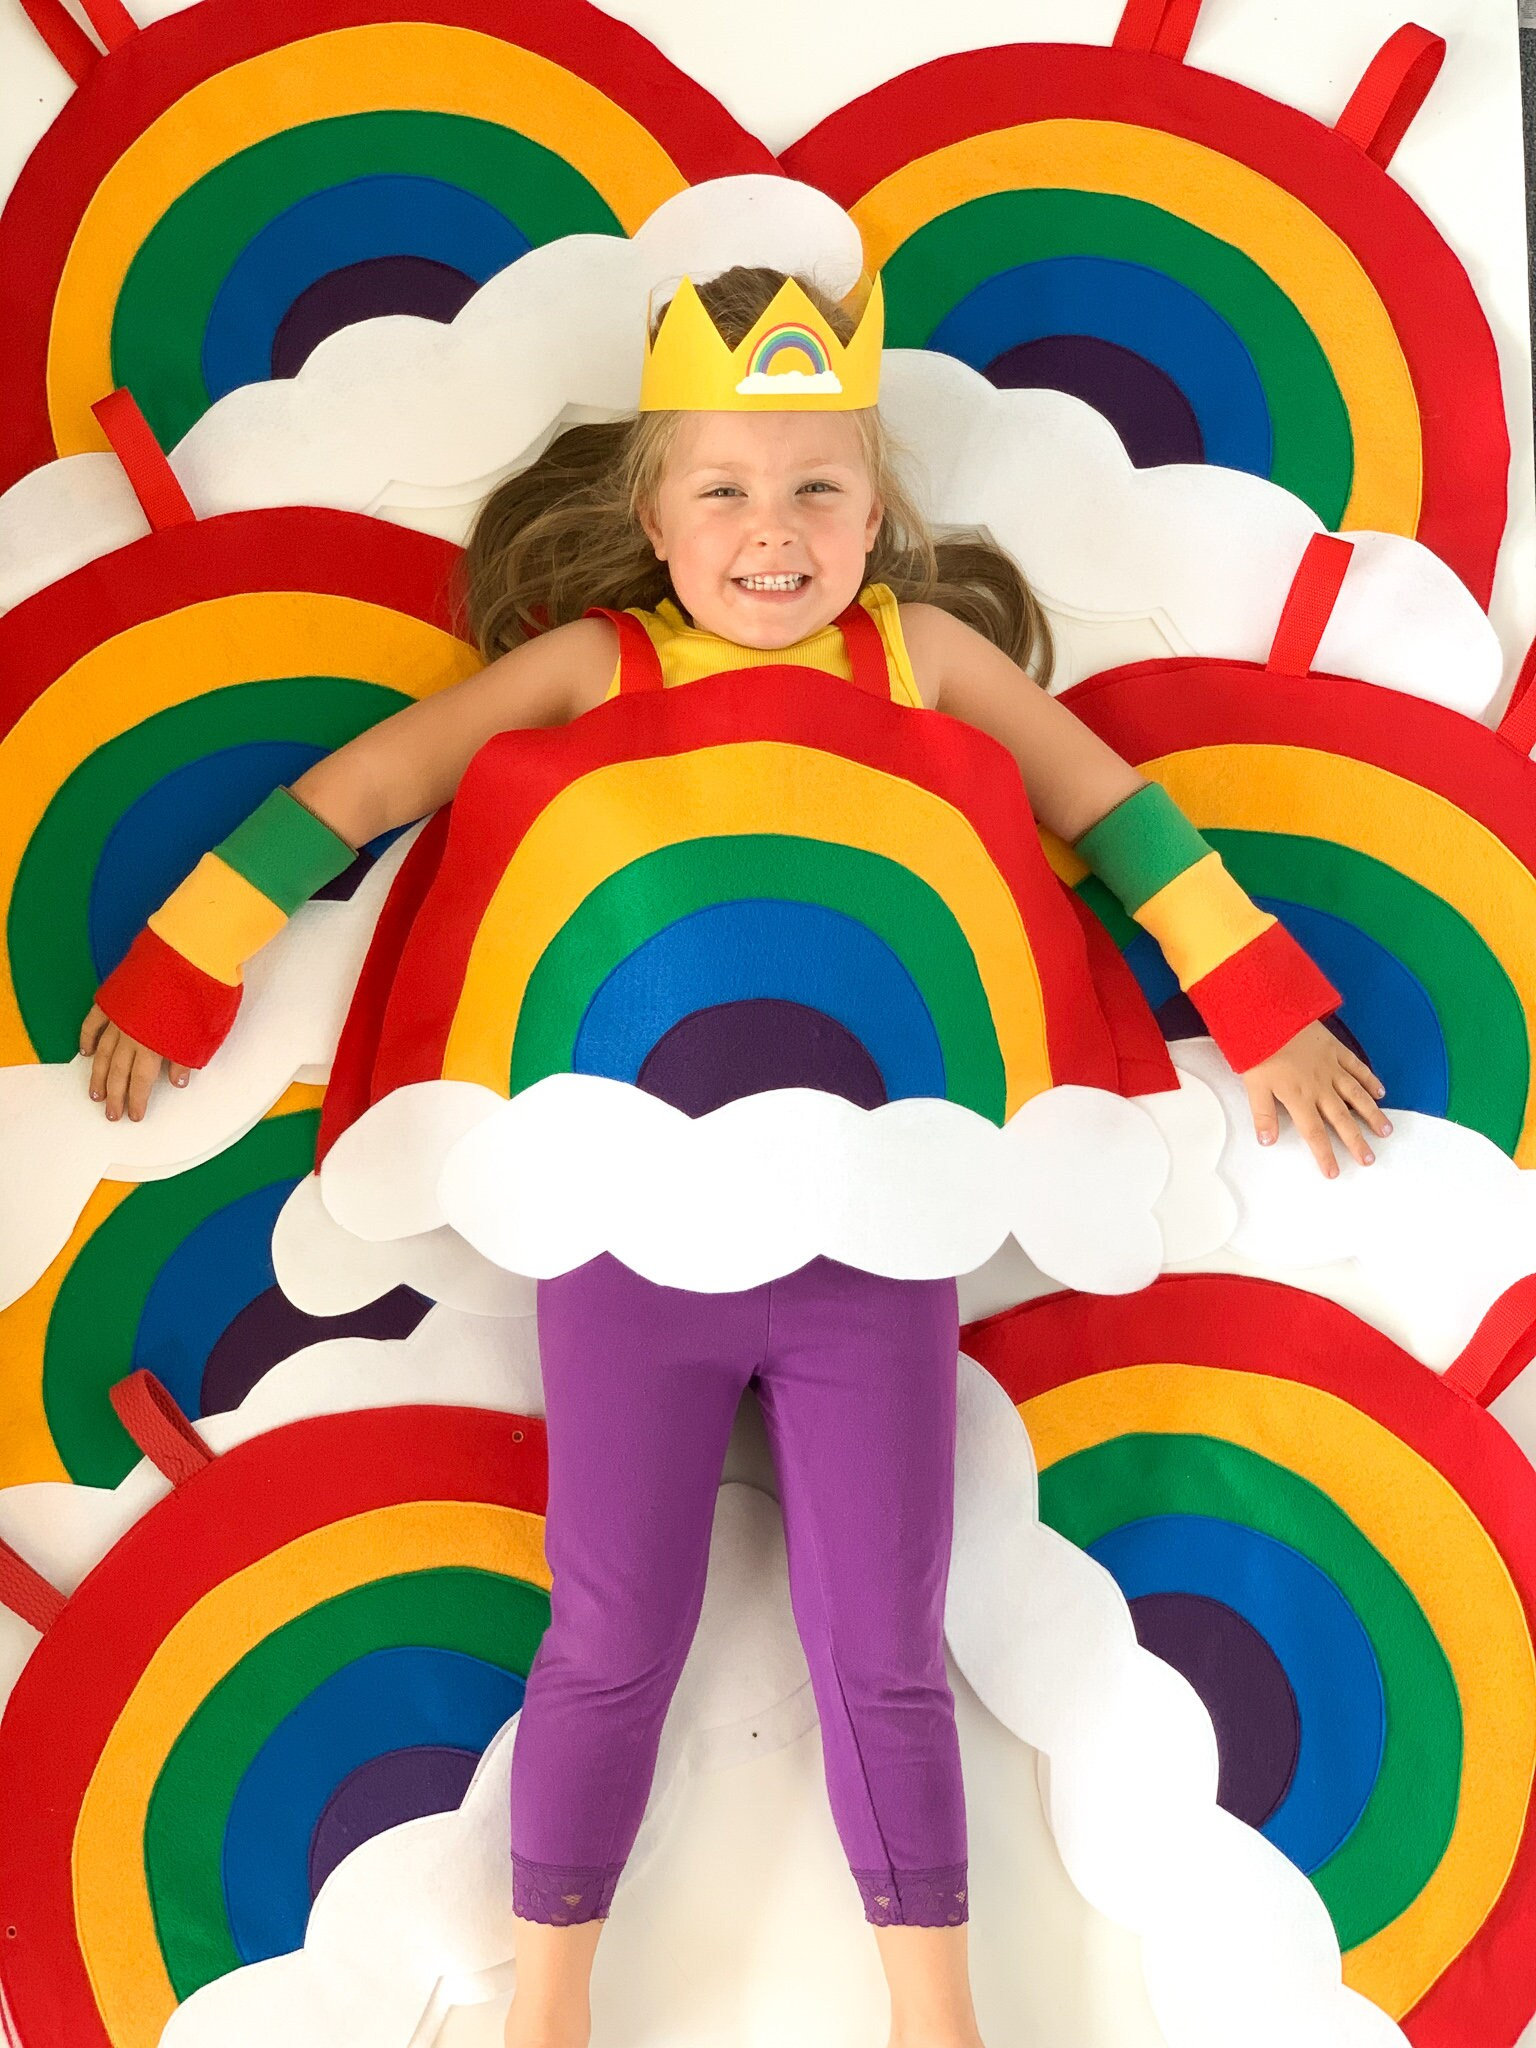 Déguisement robe nuage - Déguisement enfant Carnaval